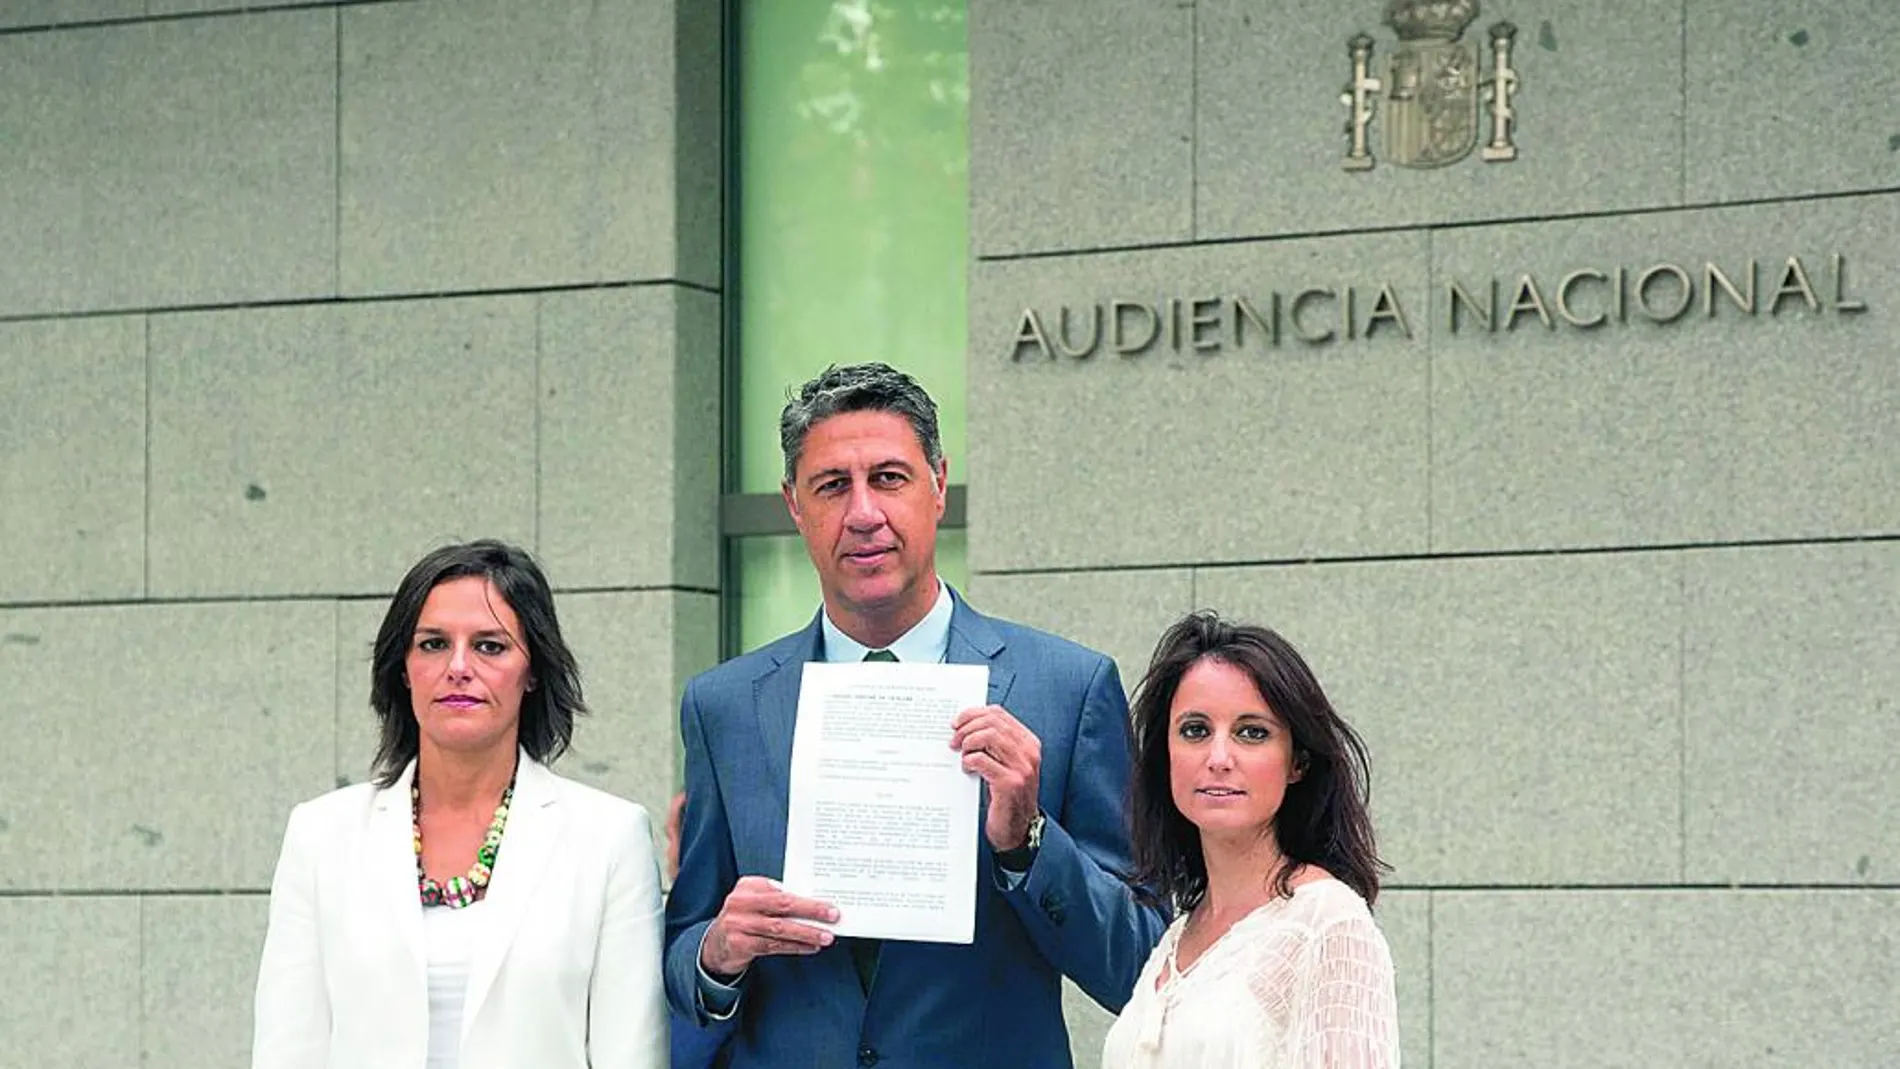 García Albiol, ayer, ante la Audiencia Nacional acompañado de las diputadas García y Levy.